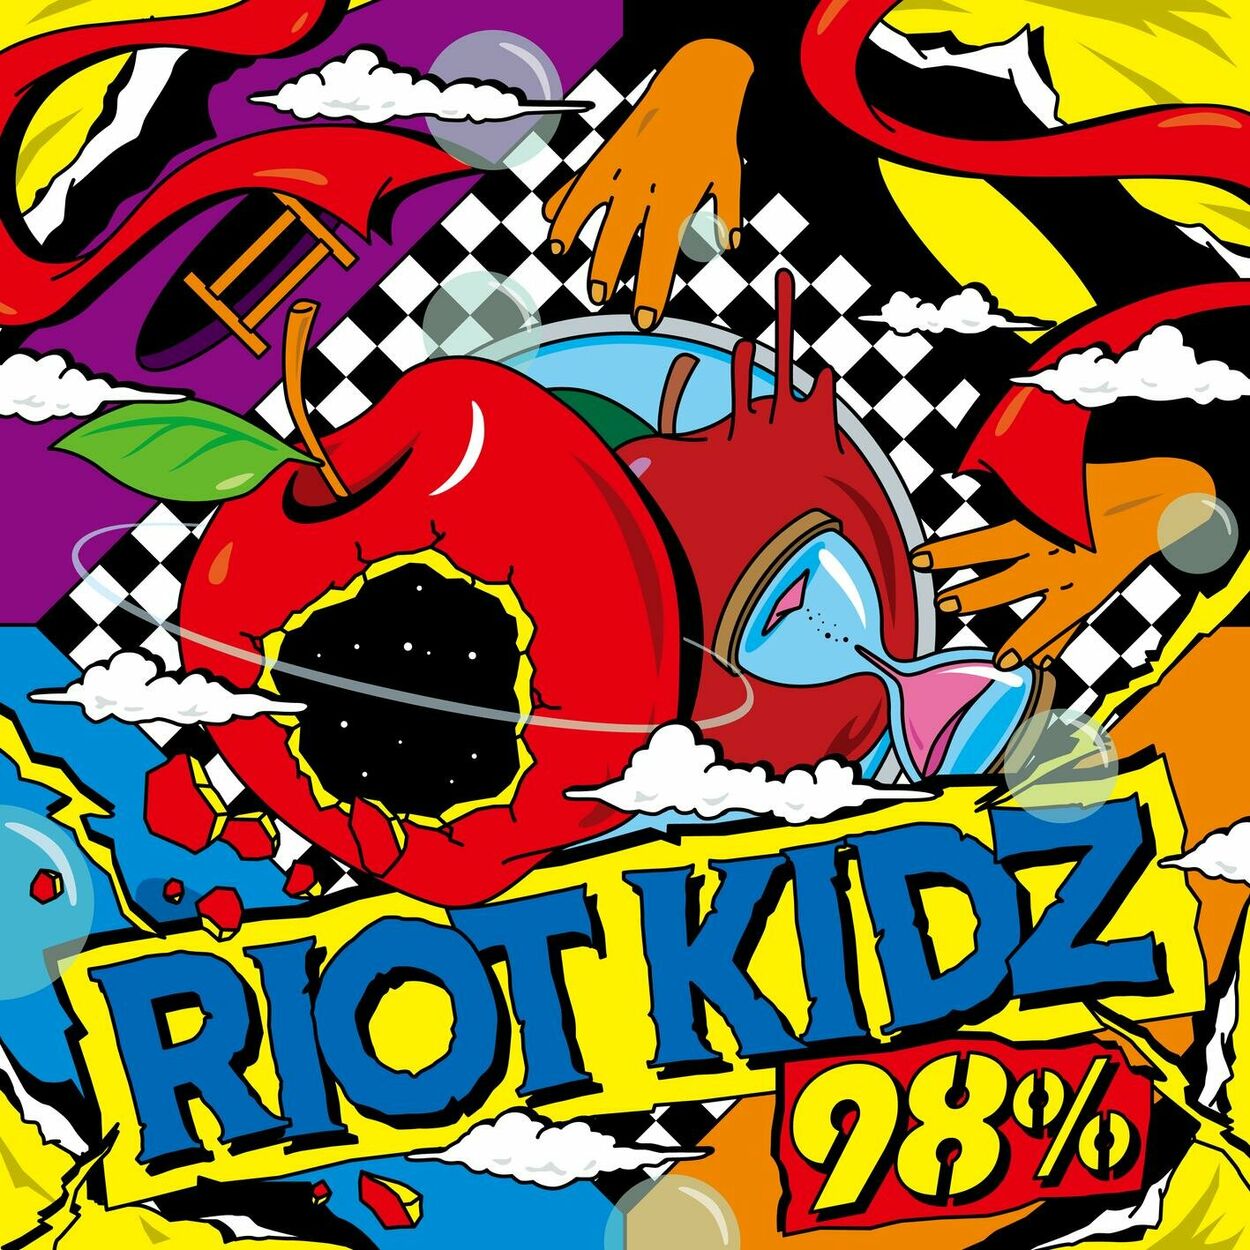 Riot Kidz – 98%